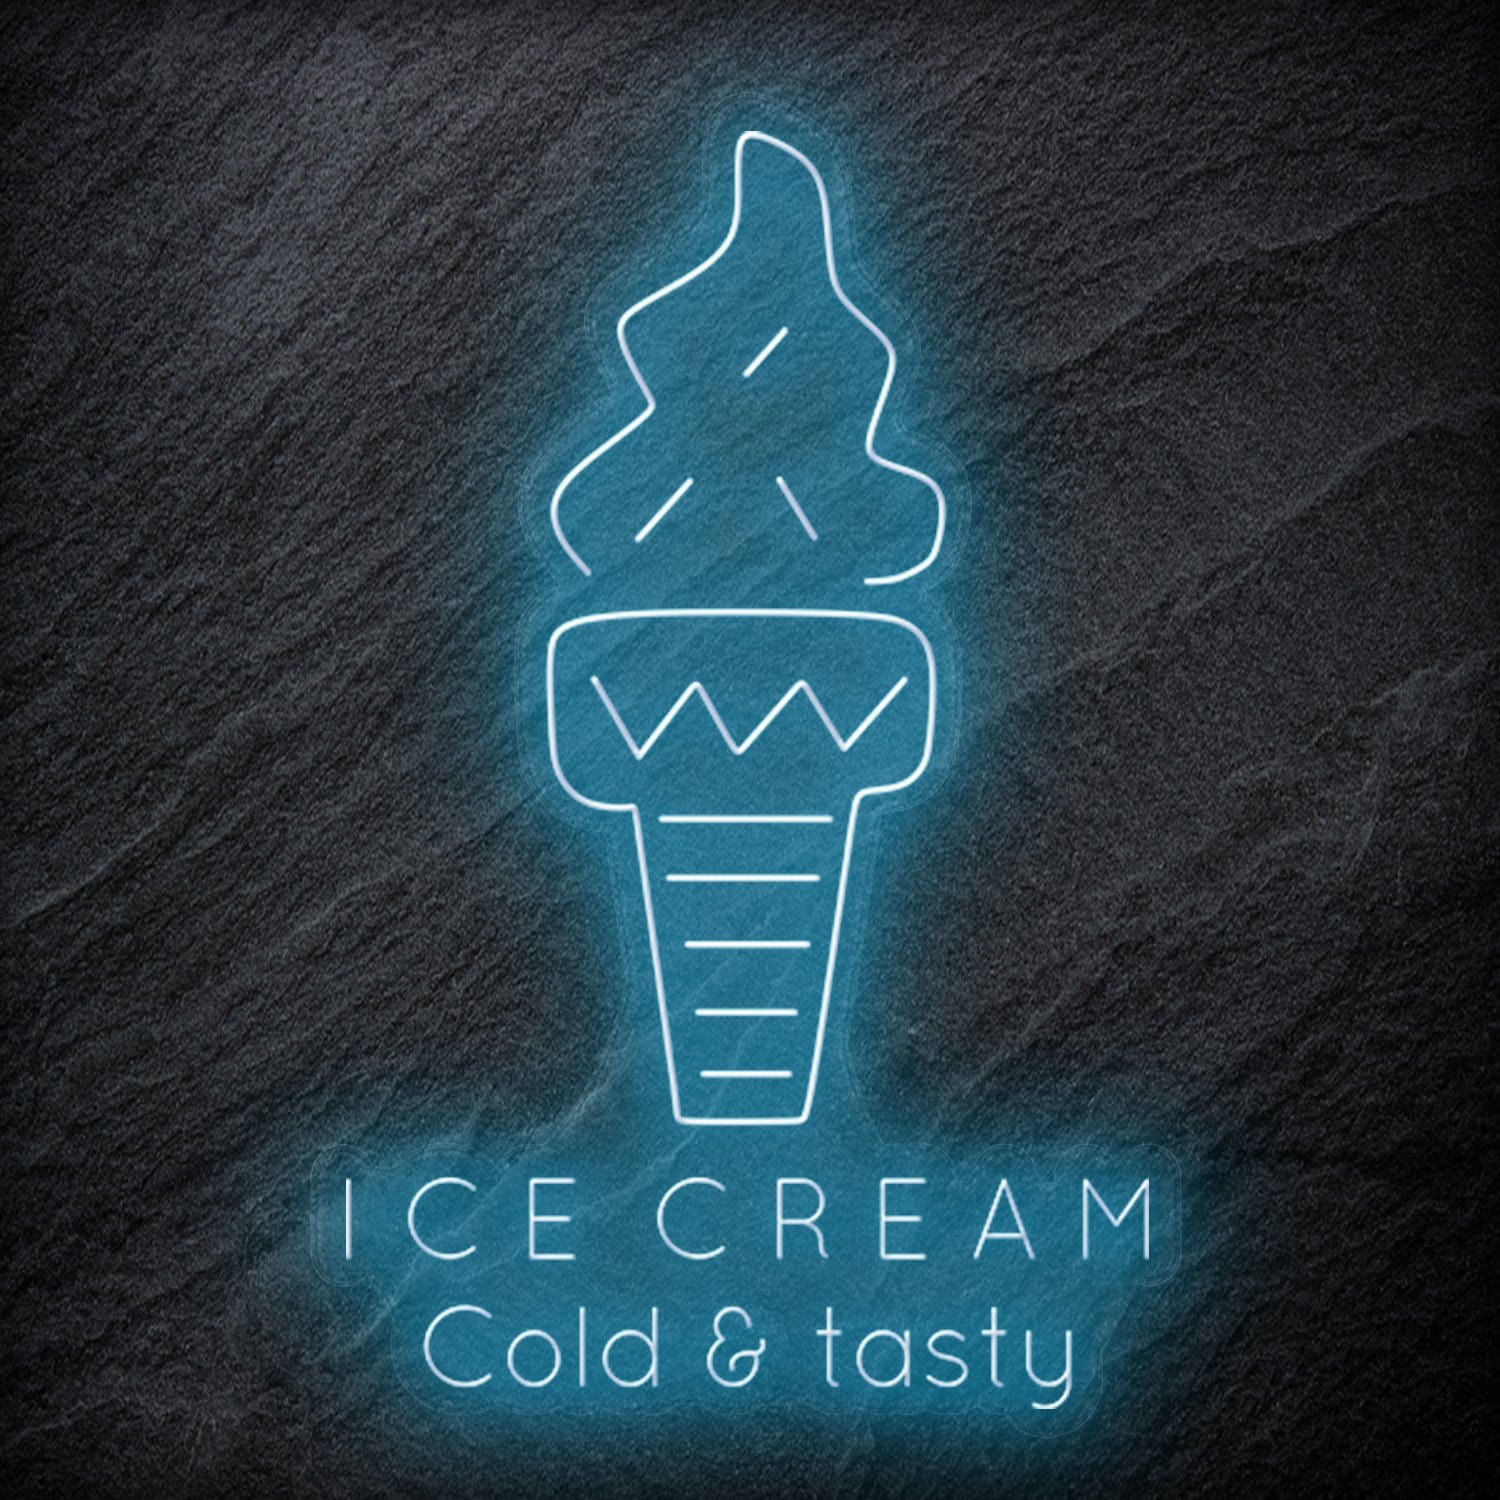 "Ice Cream Cold & tasty" LED  Neonschild - NEONEVERGLOW